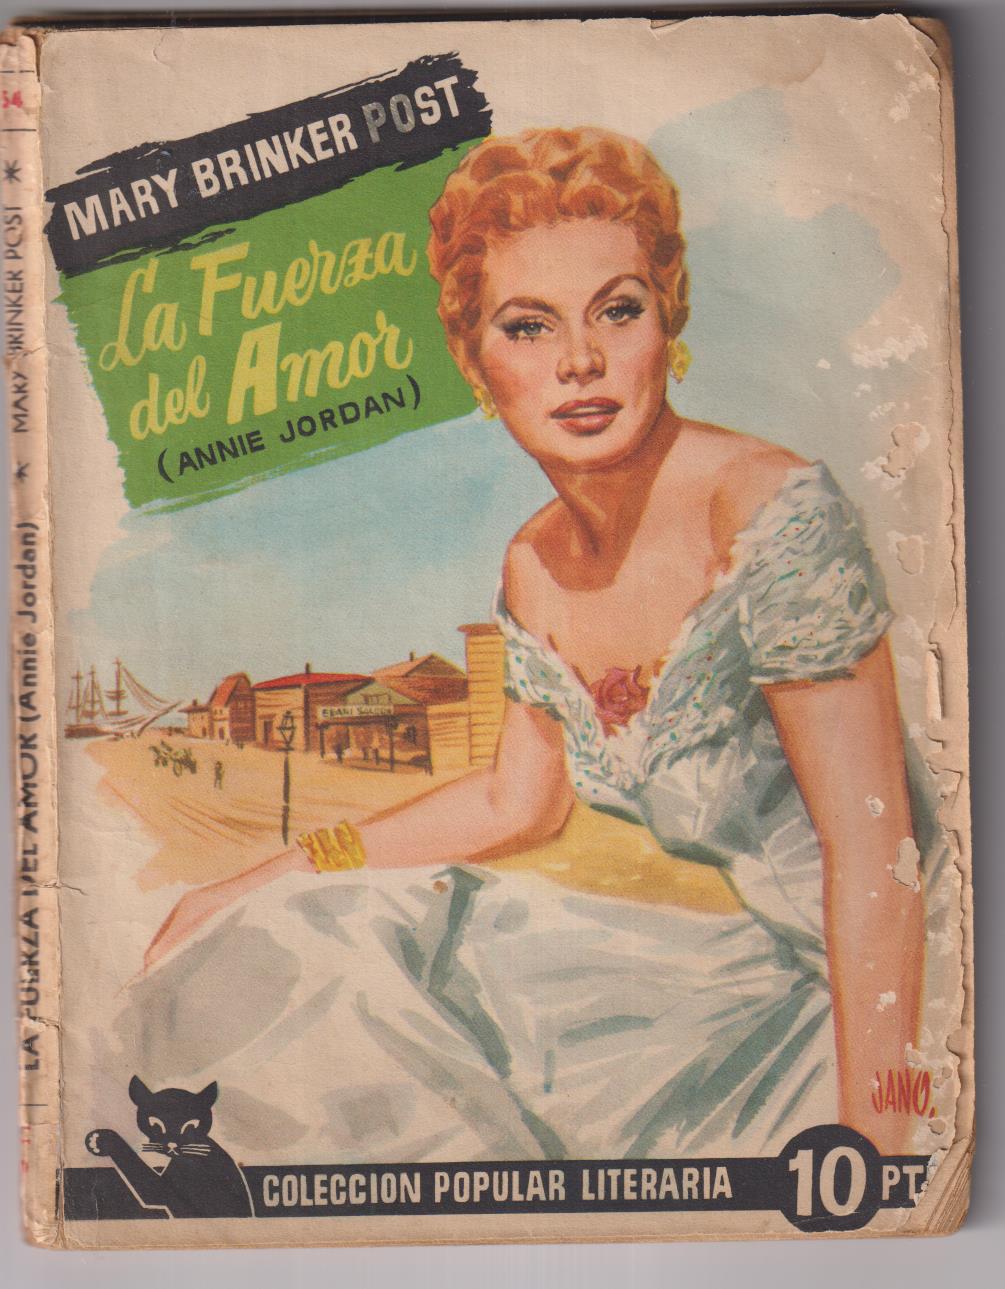 C. Popular Literaria nº 54. Mary Brinker Post. La fuerza del amor, Año 1957